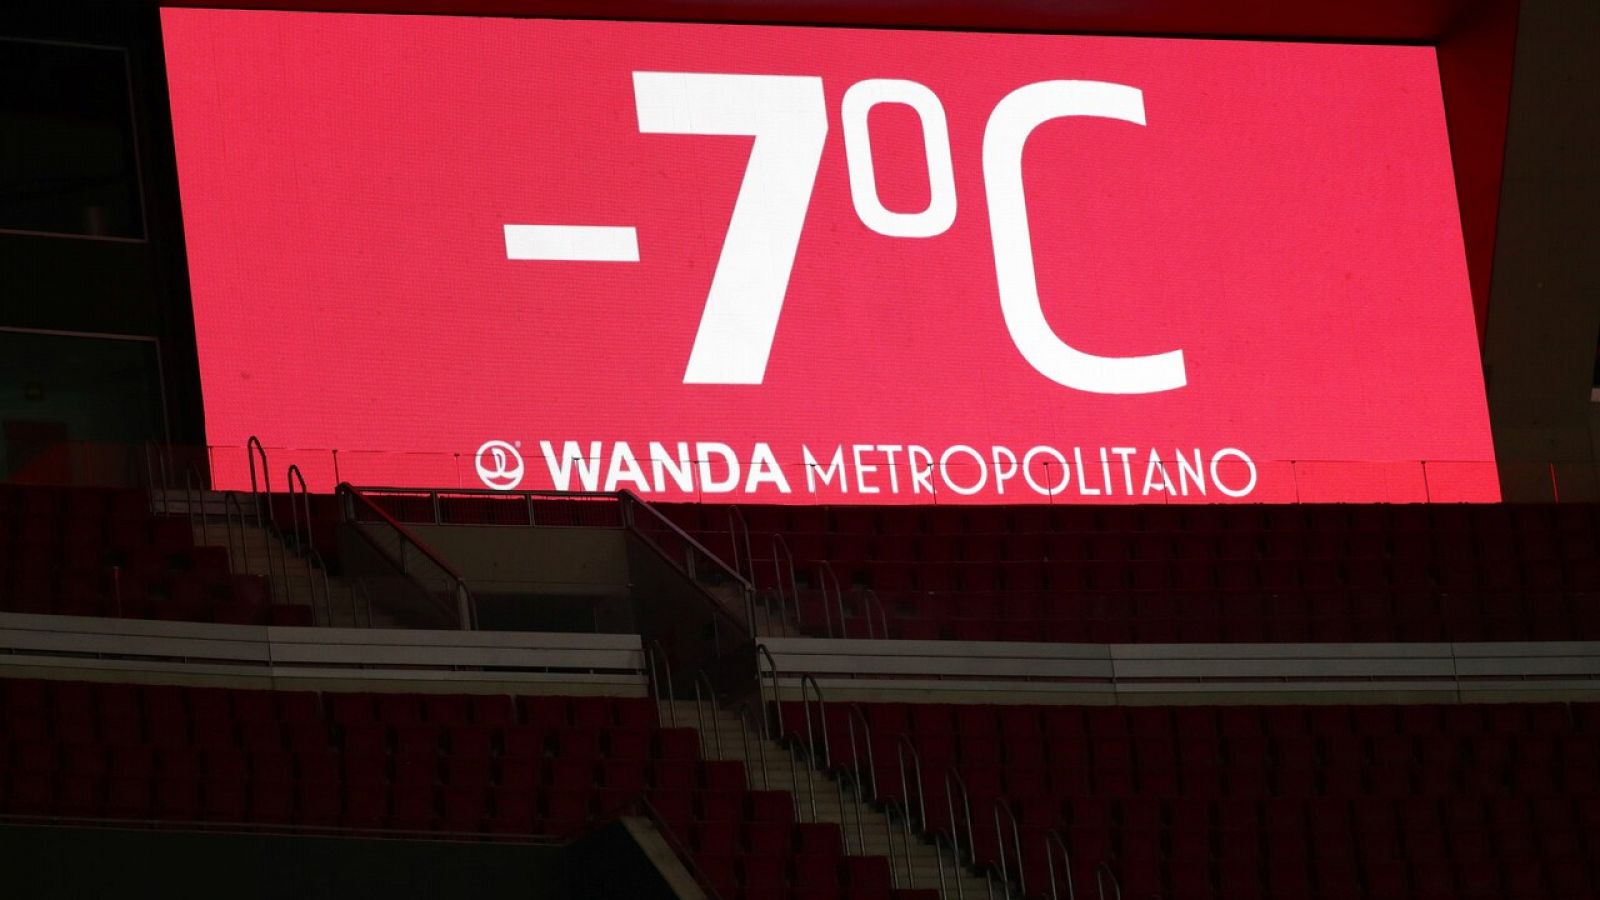 El Wanda Metropolitano, sede del Leganés-Sevilla, registró menos 7 grados el pasado martes.